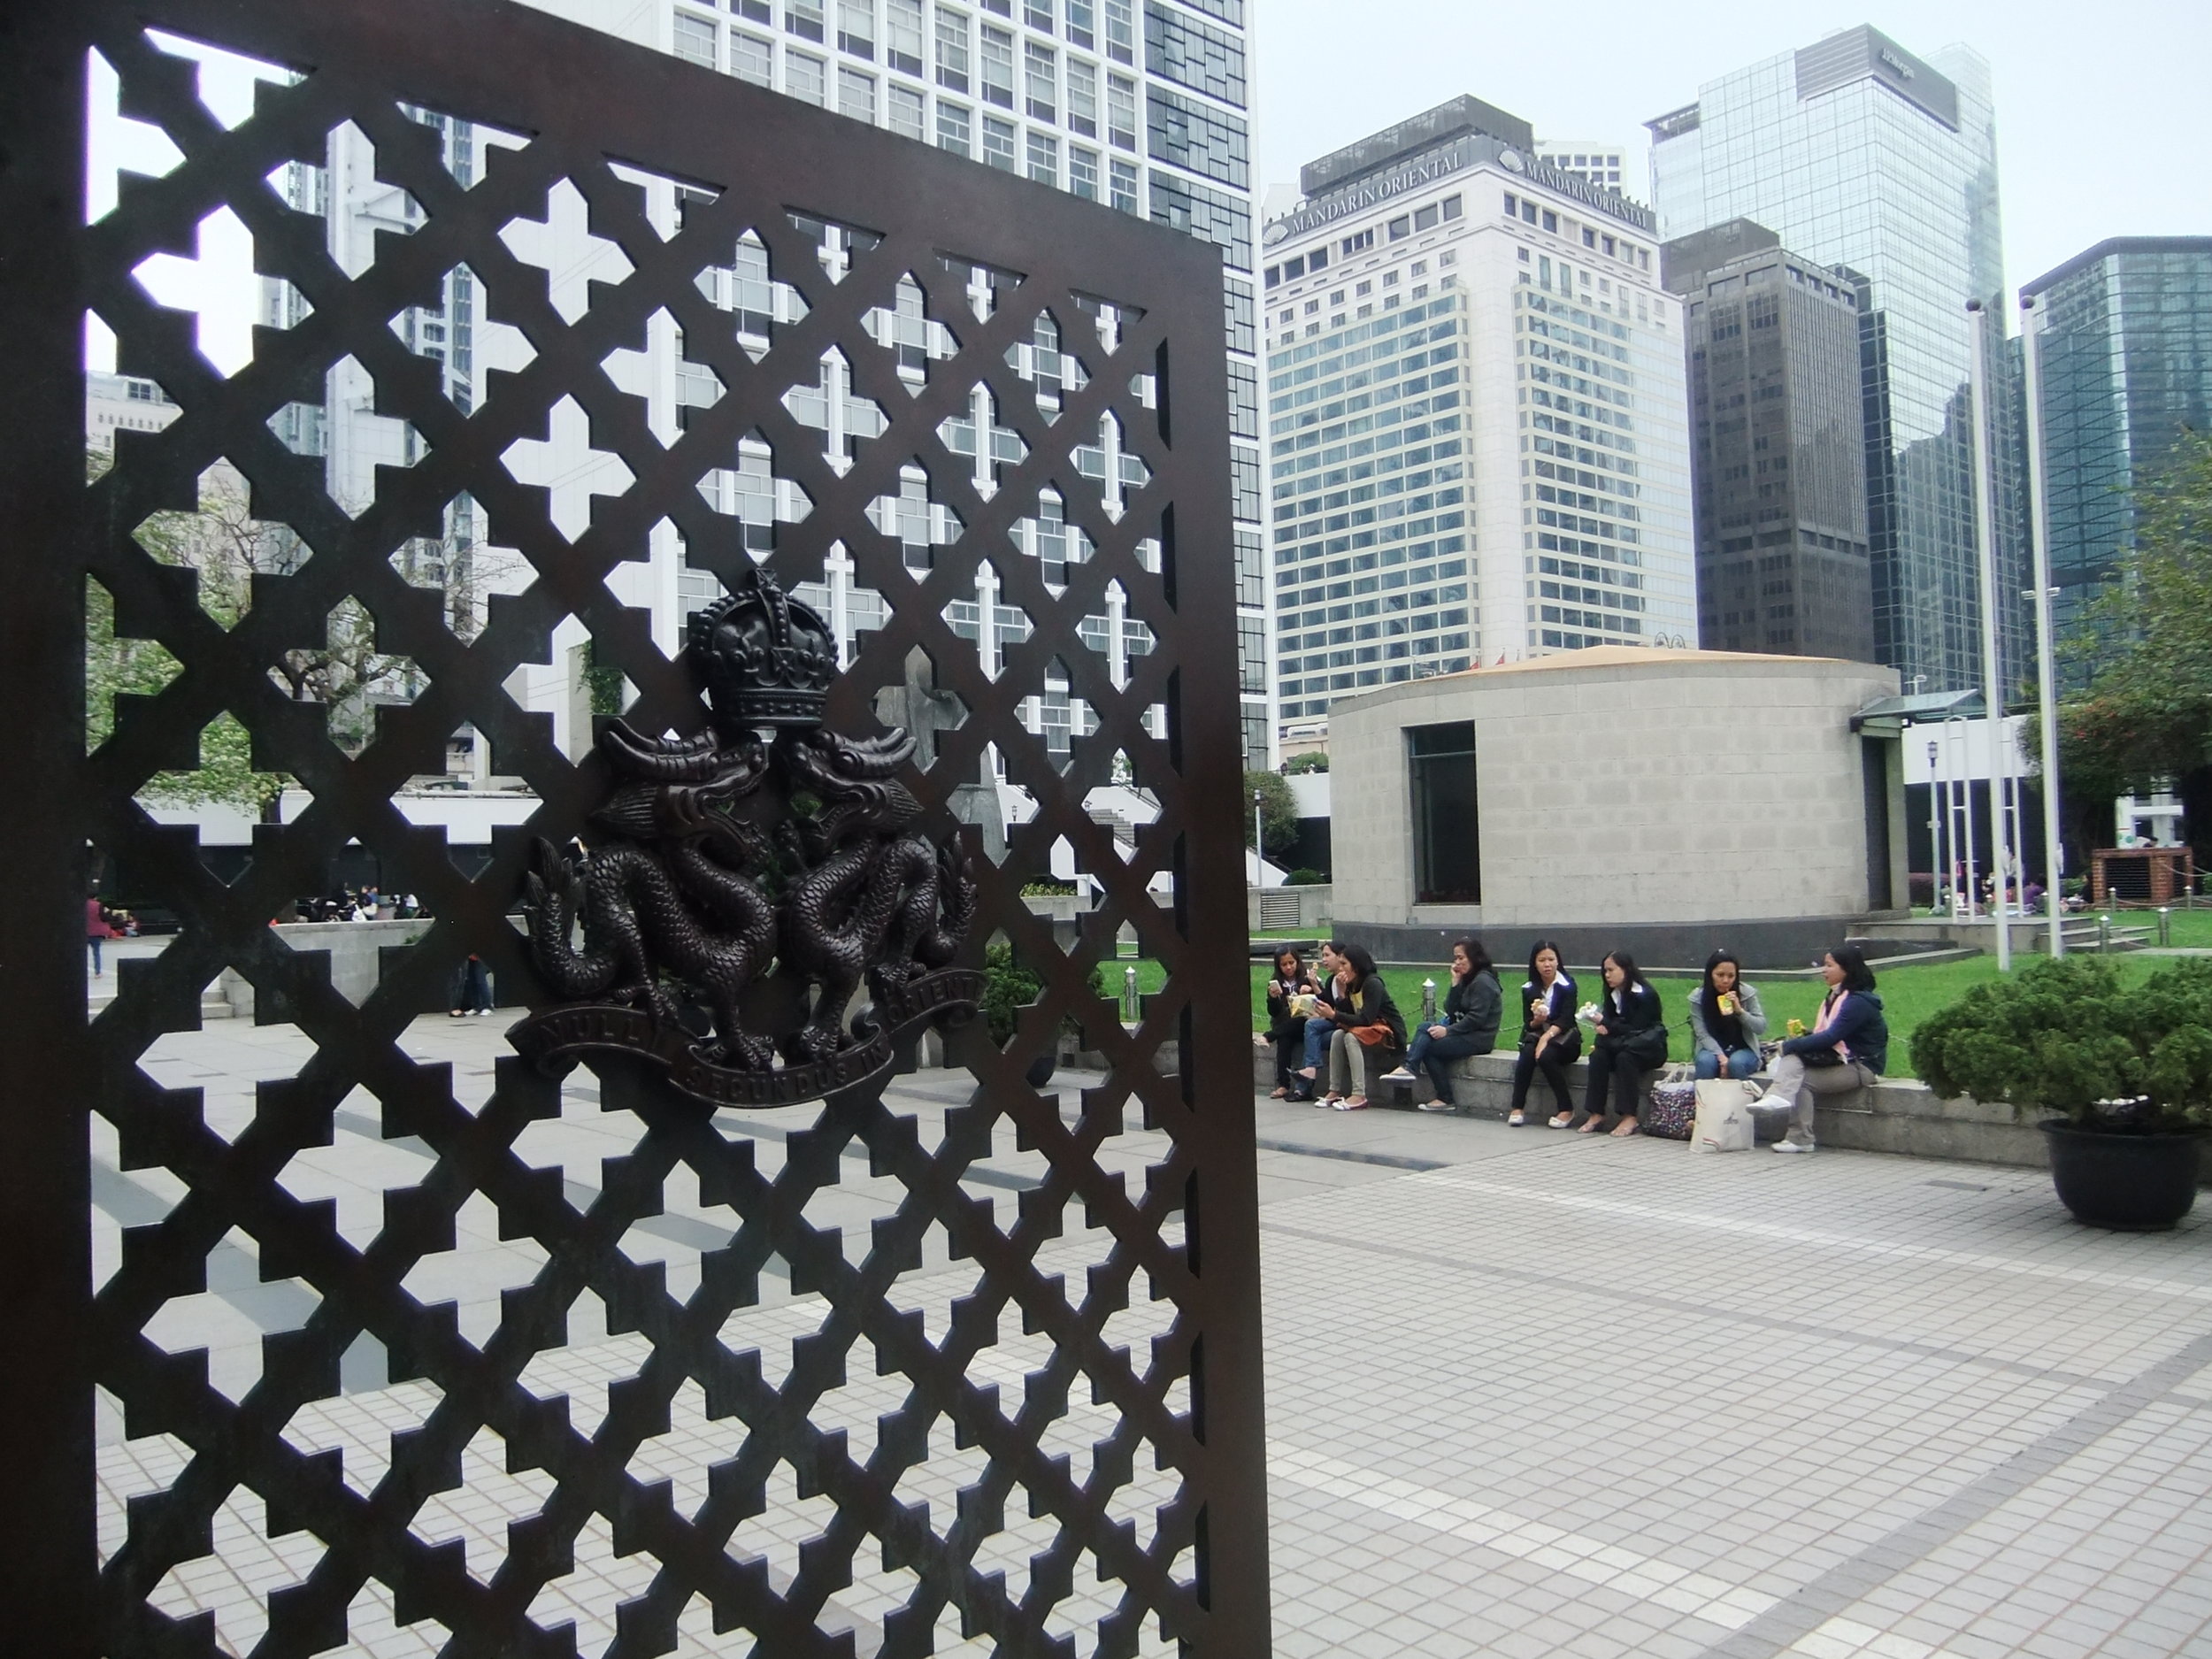 Hong Kong City Hall Memorial Garden